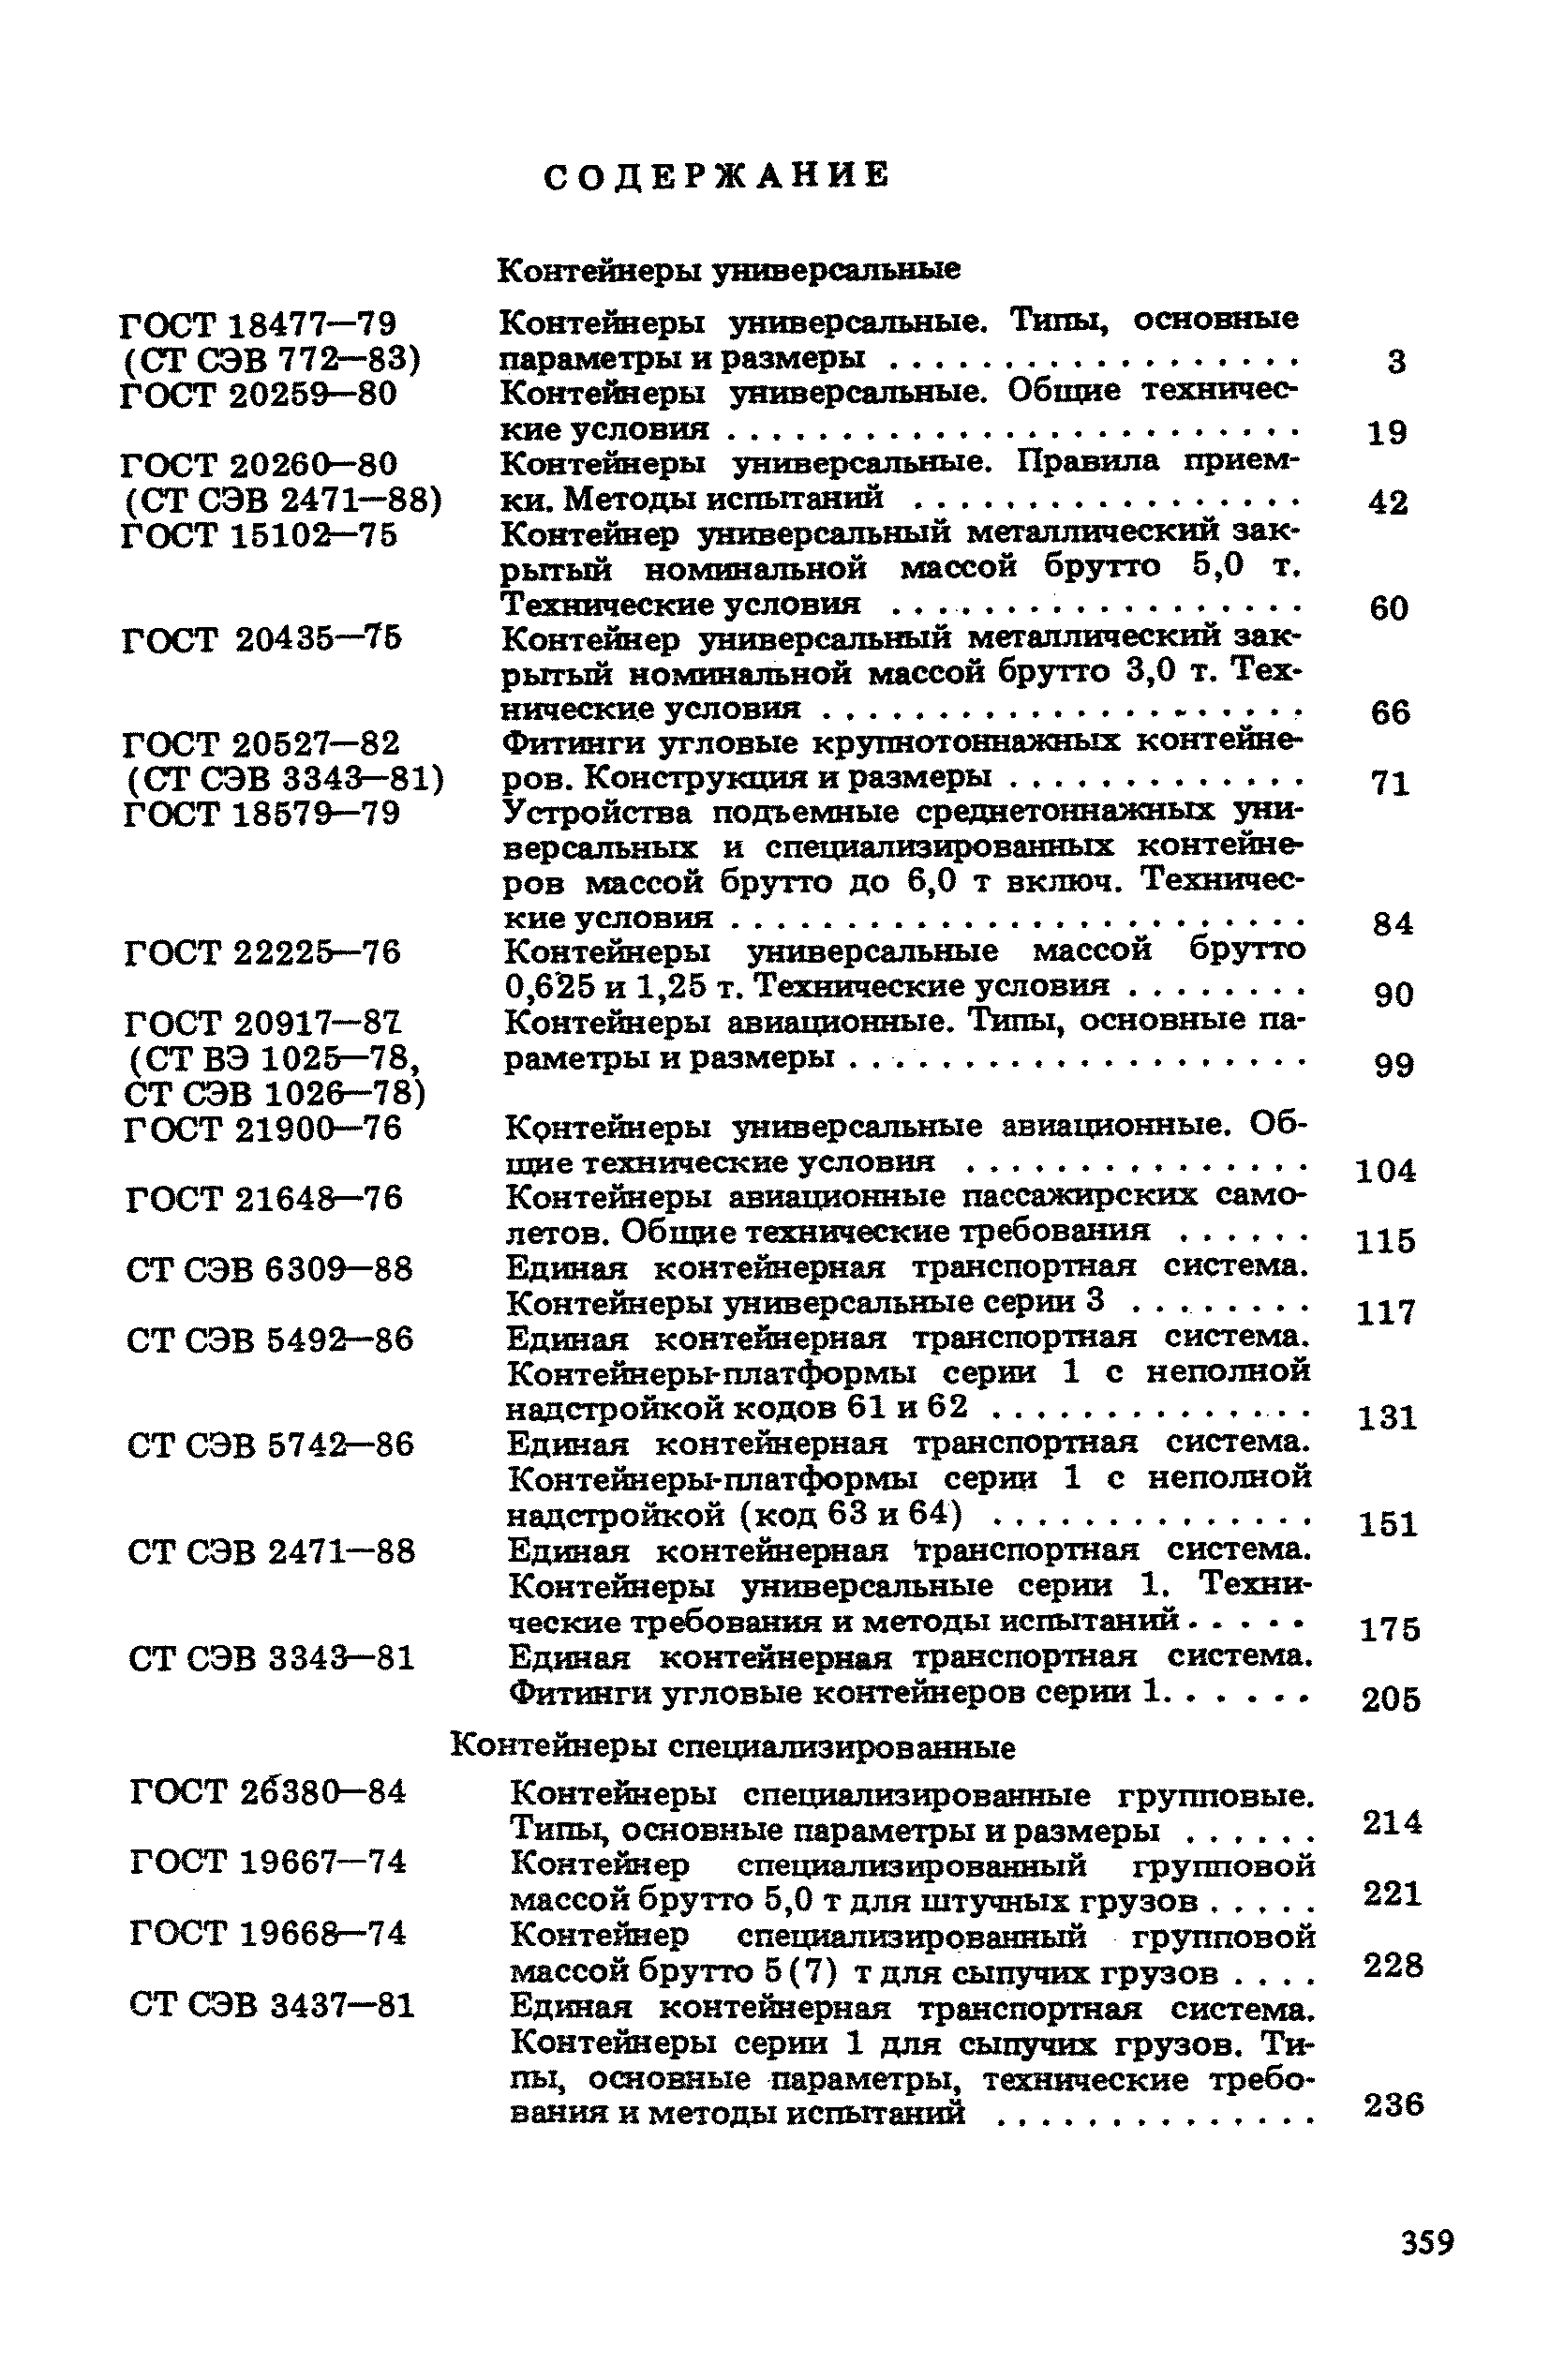 СТ СЭВ 5494-86